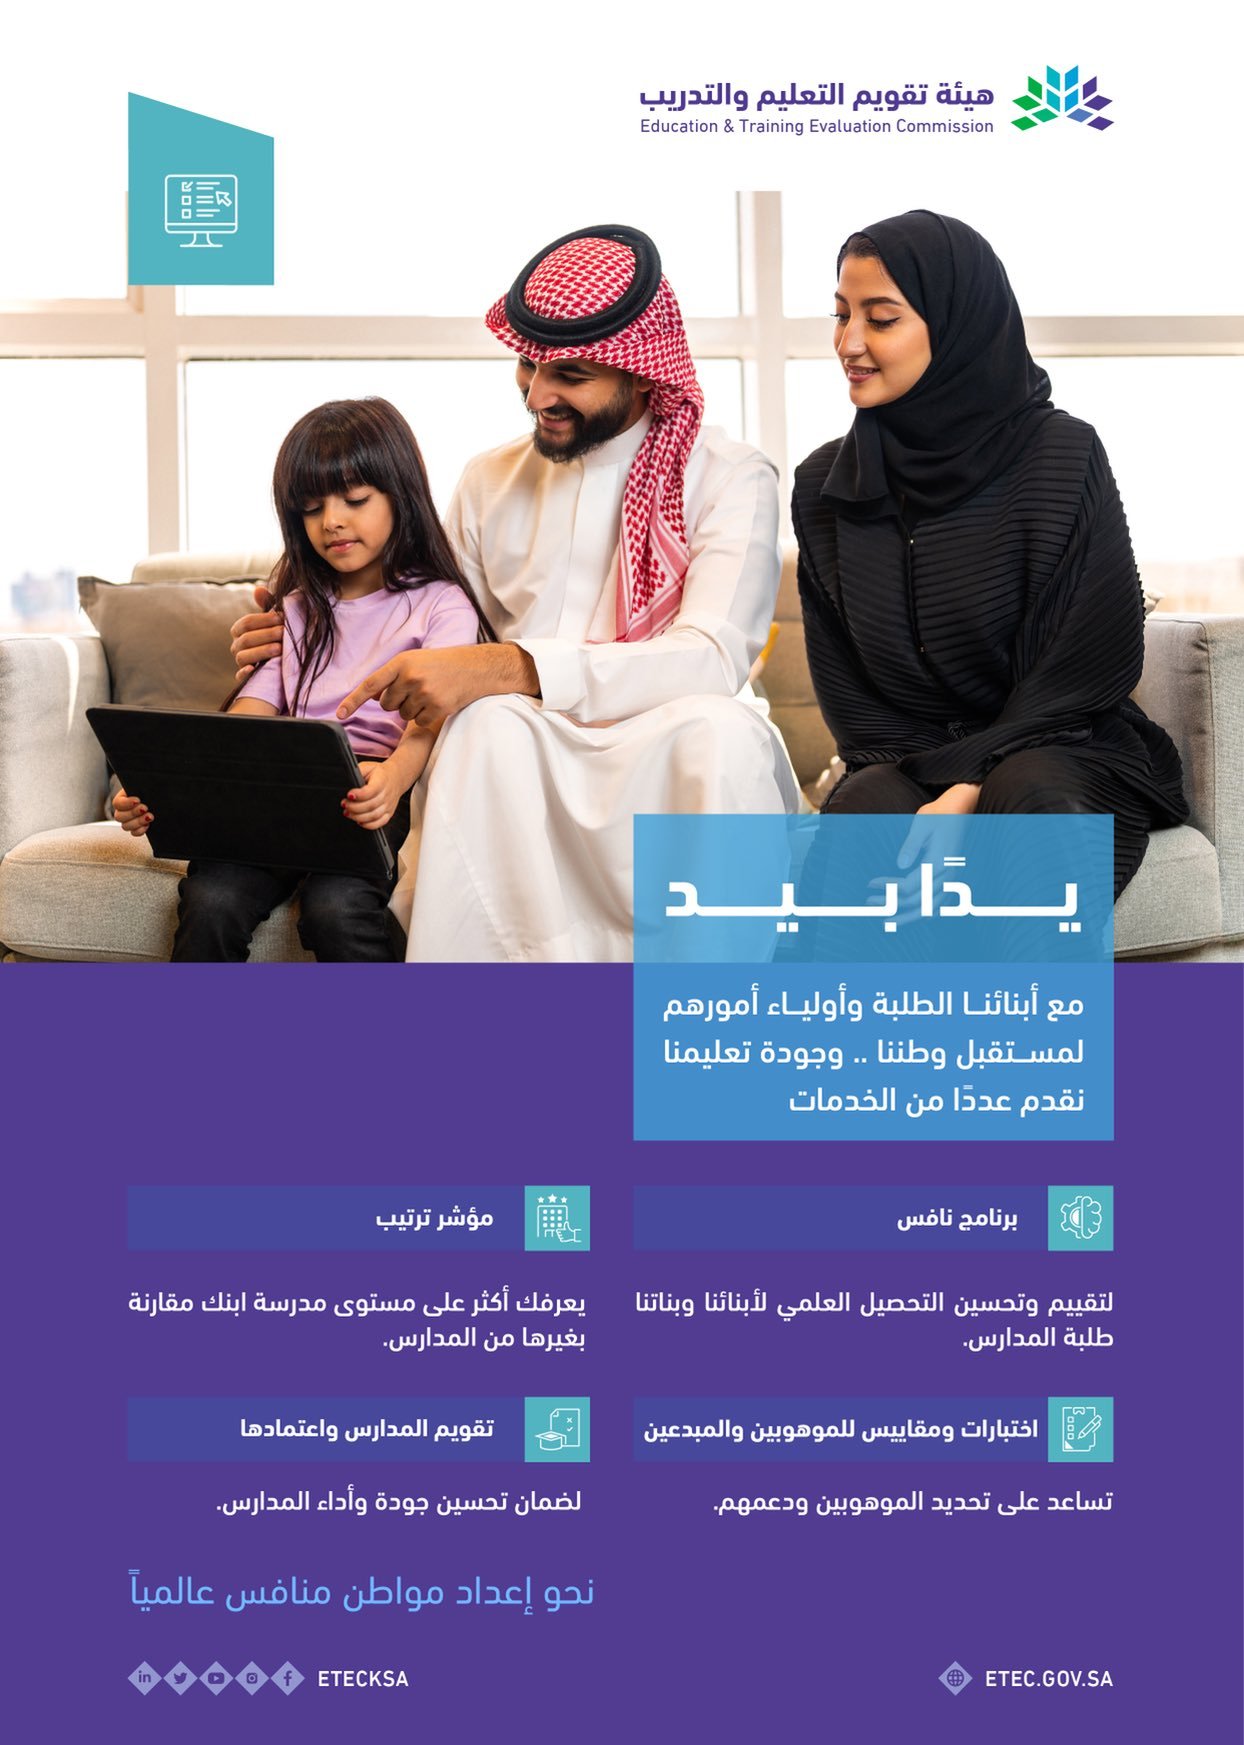 خدمات هيئة تقويم التعليم والتدريب في السعودية